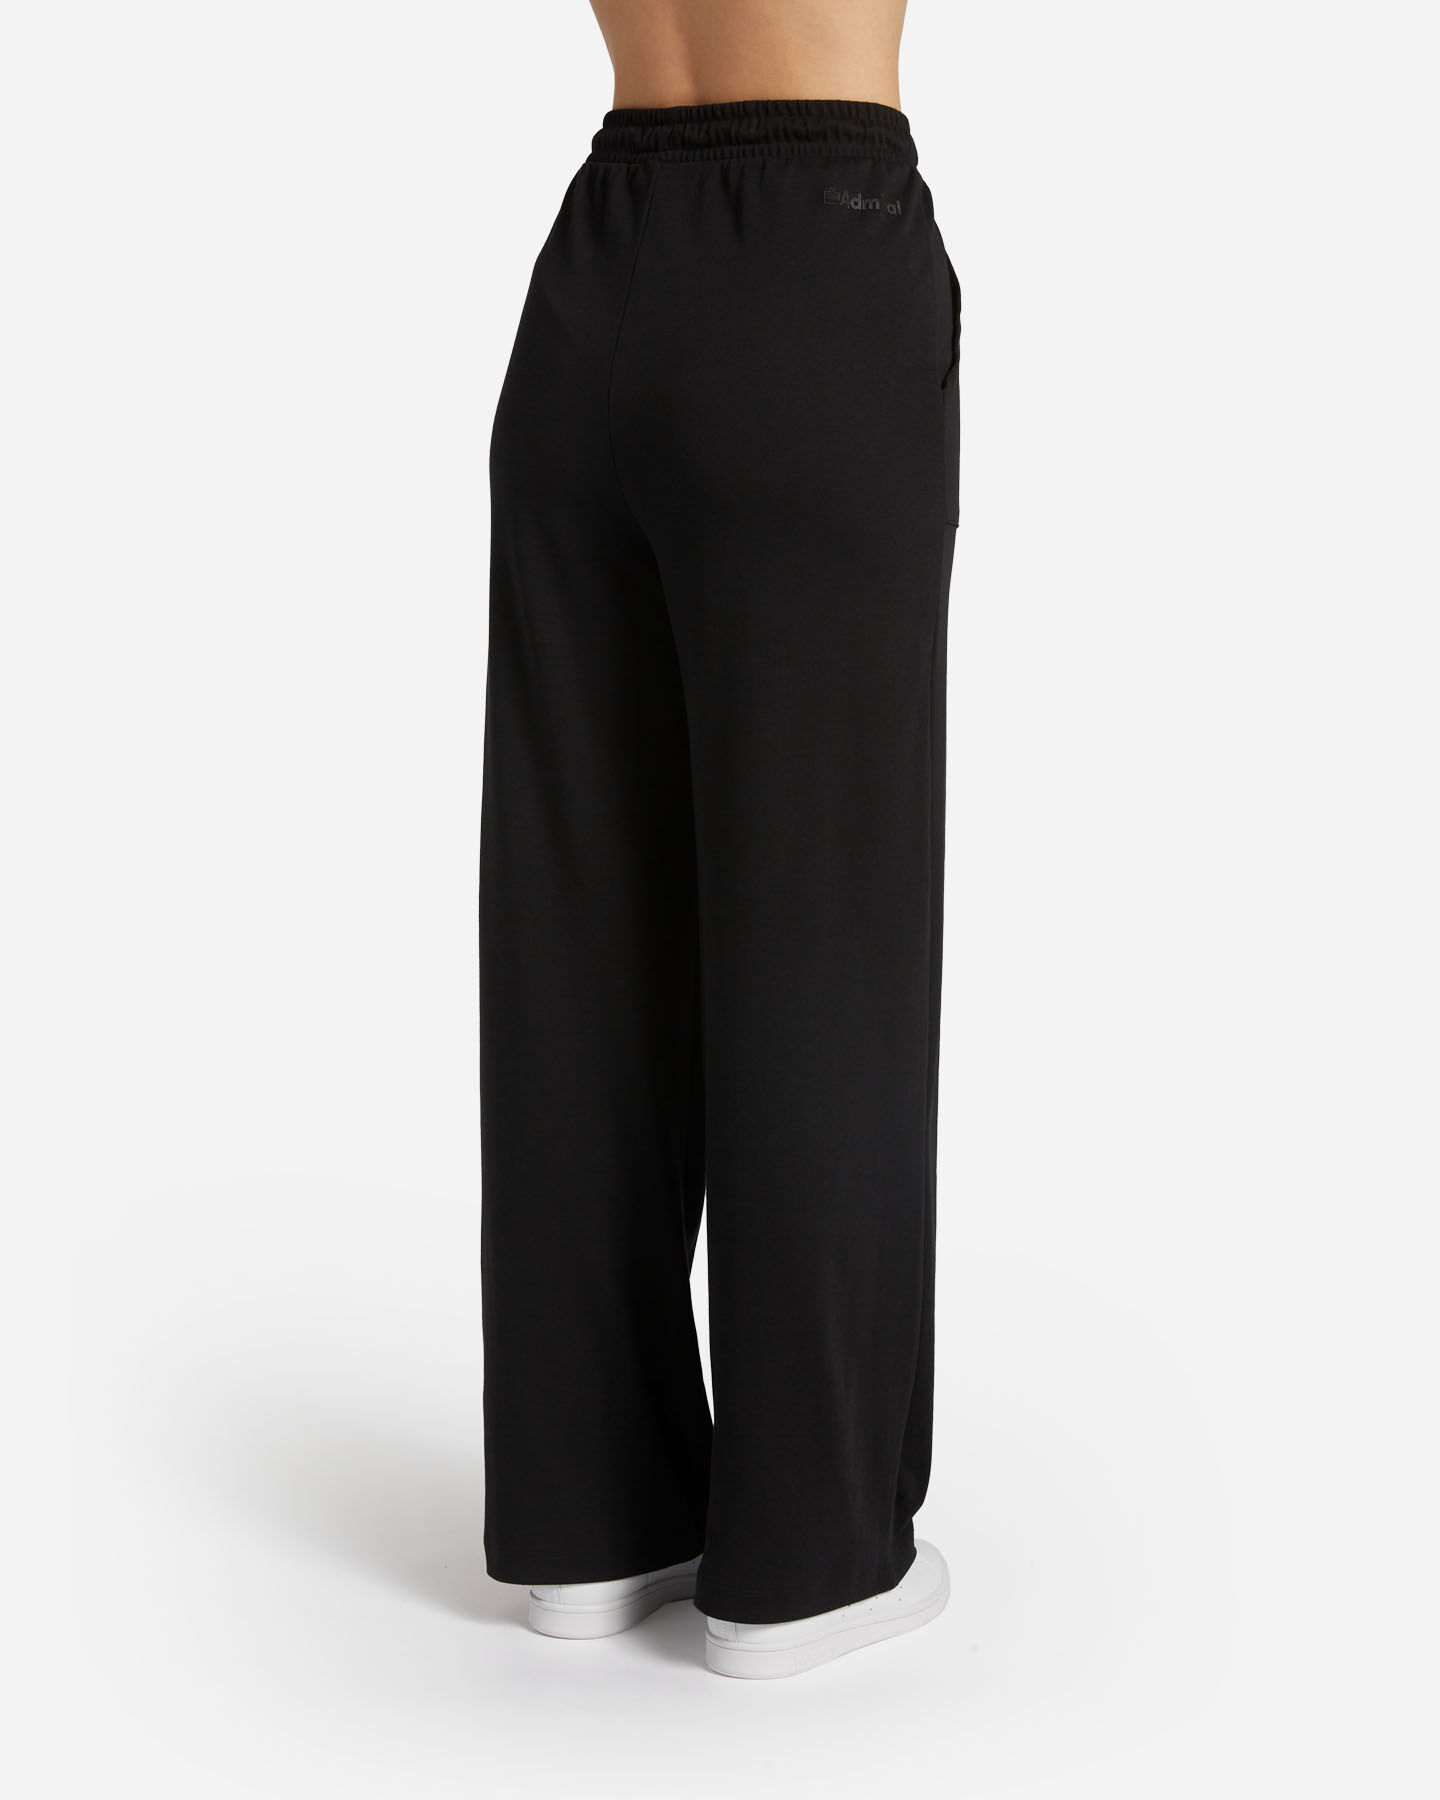  Pantalone ADMIRAL CLASSIC W S4129415|050|L scatto 1